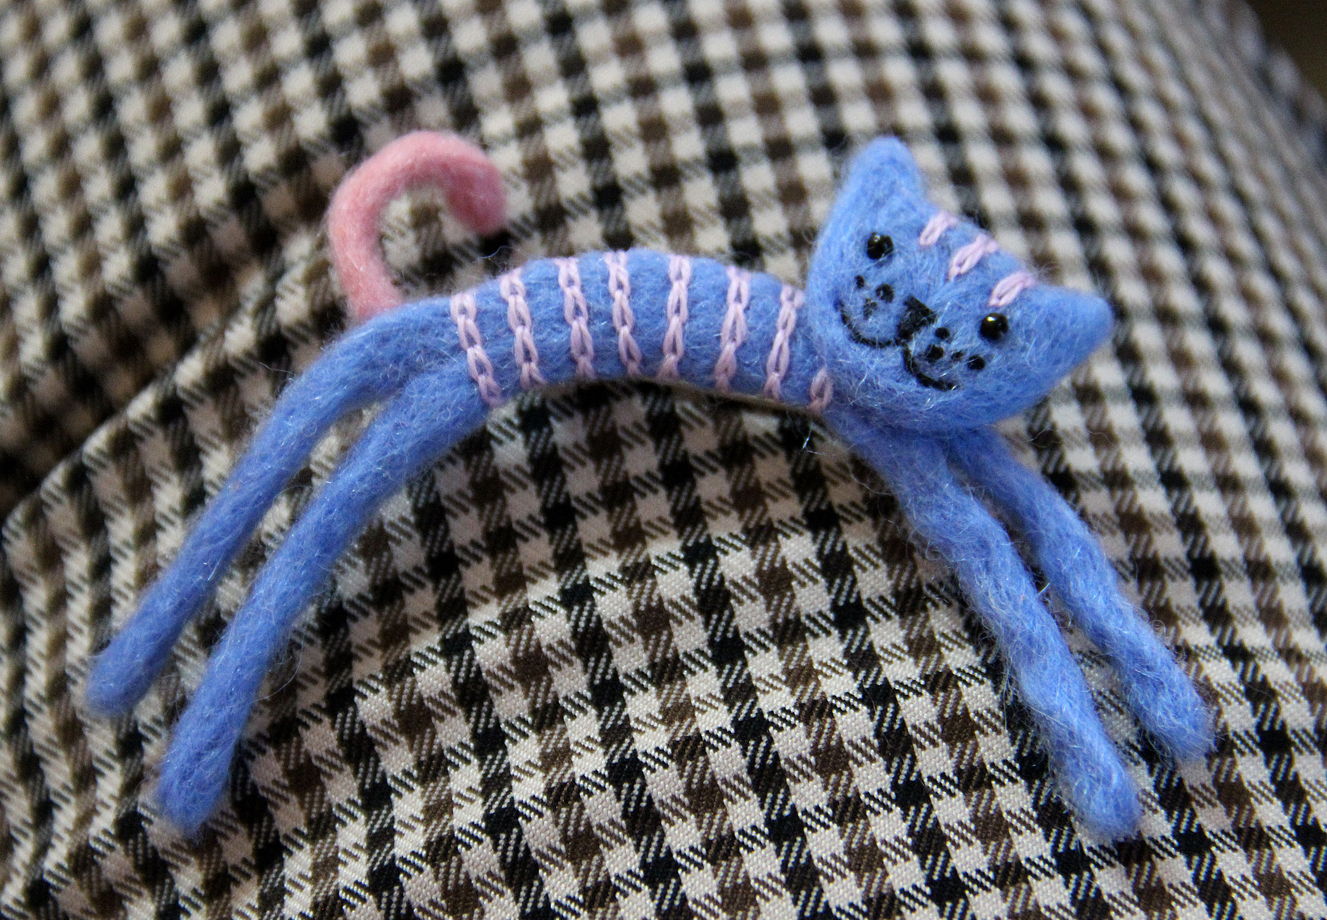 Брошь «Голубой котенок с розовыми полосками»